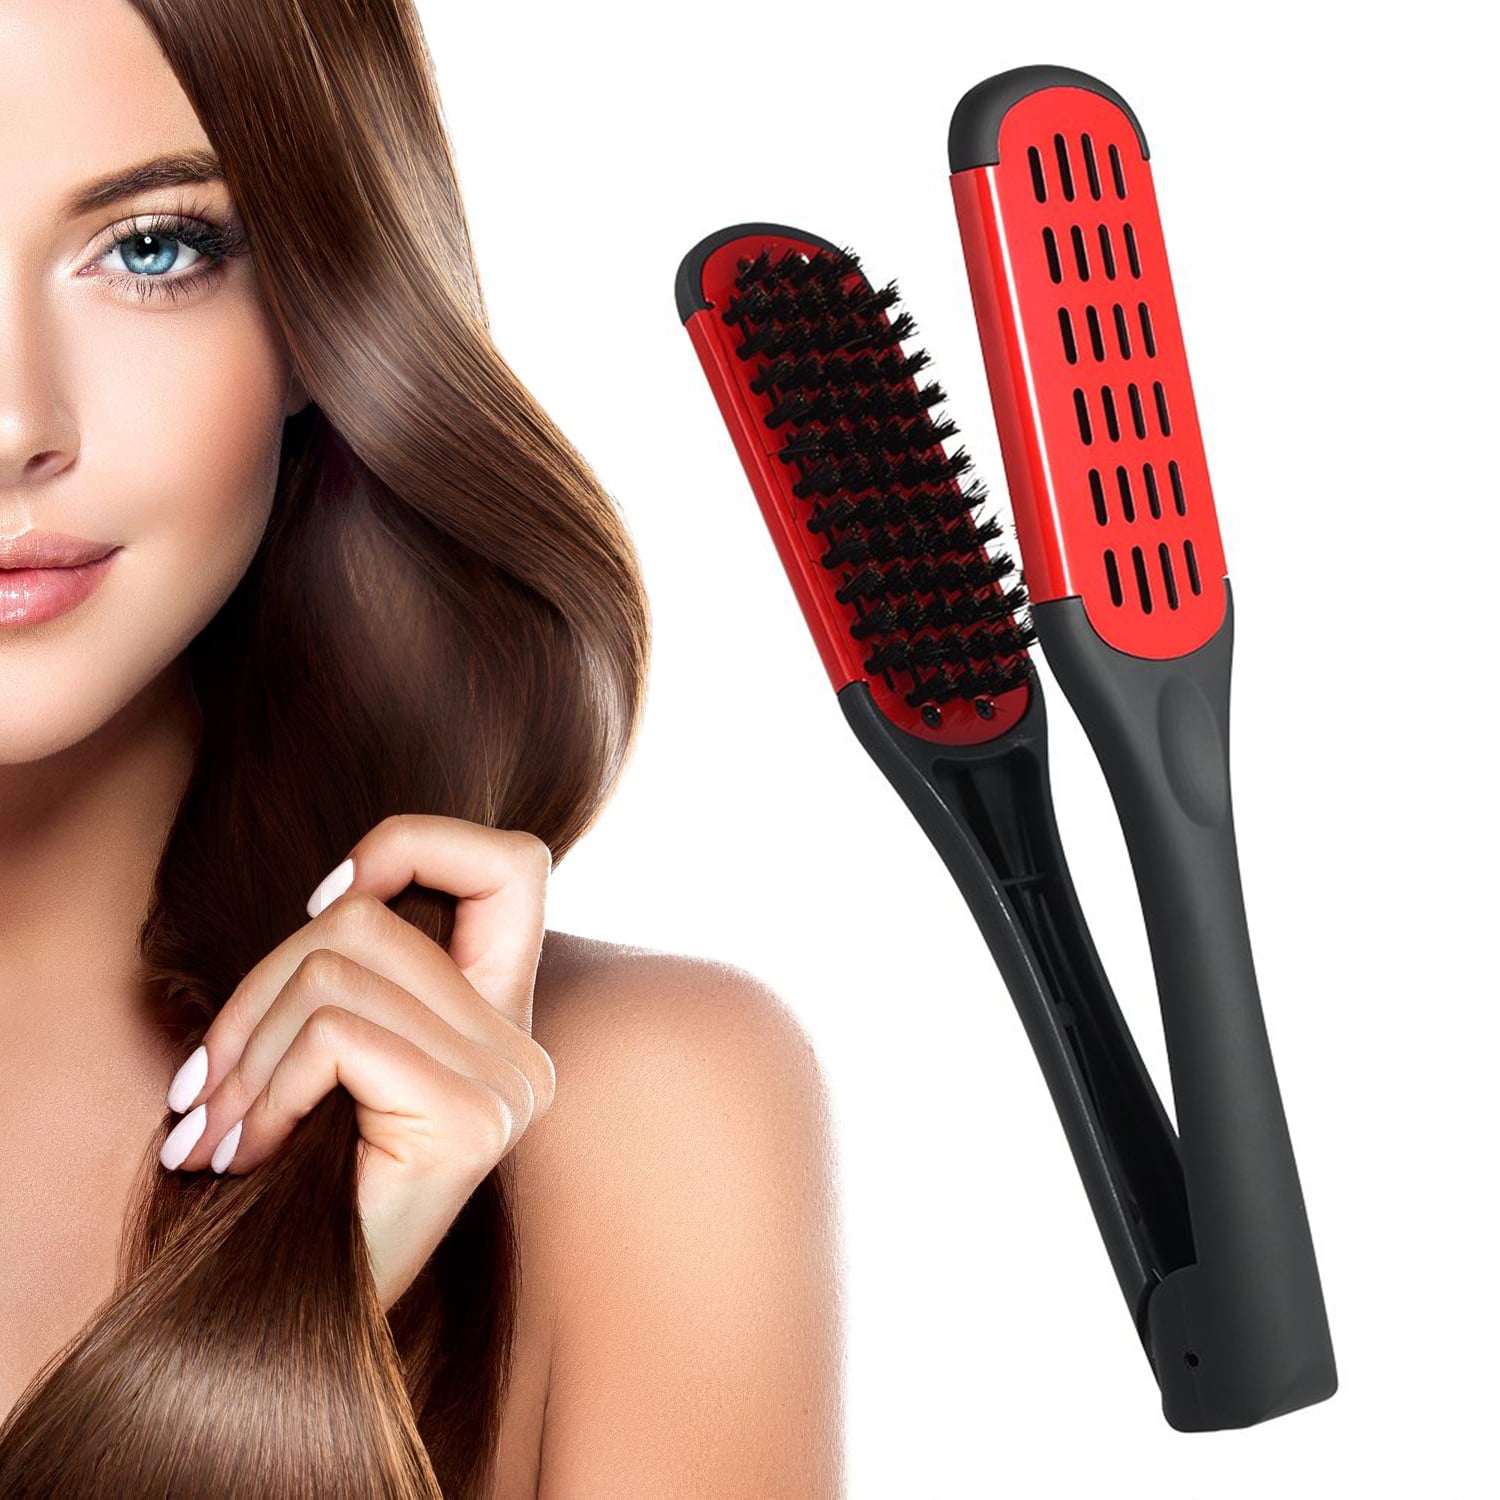 HighQuality Ionic Hair Straightener Brush Ceramic Heating Hair  Straightening Brush Comb  Walmartcom